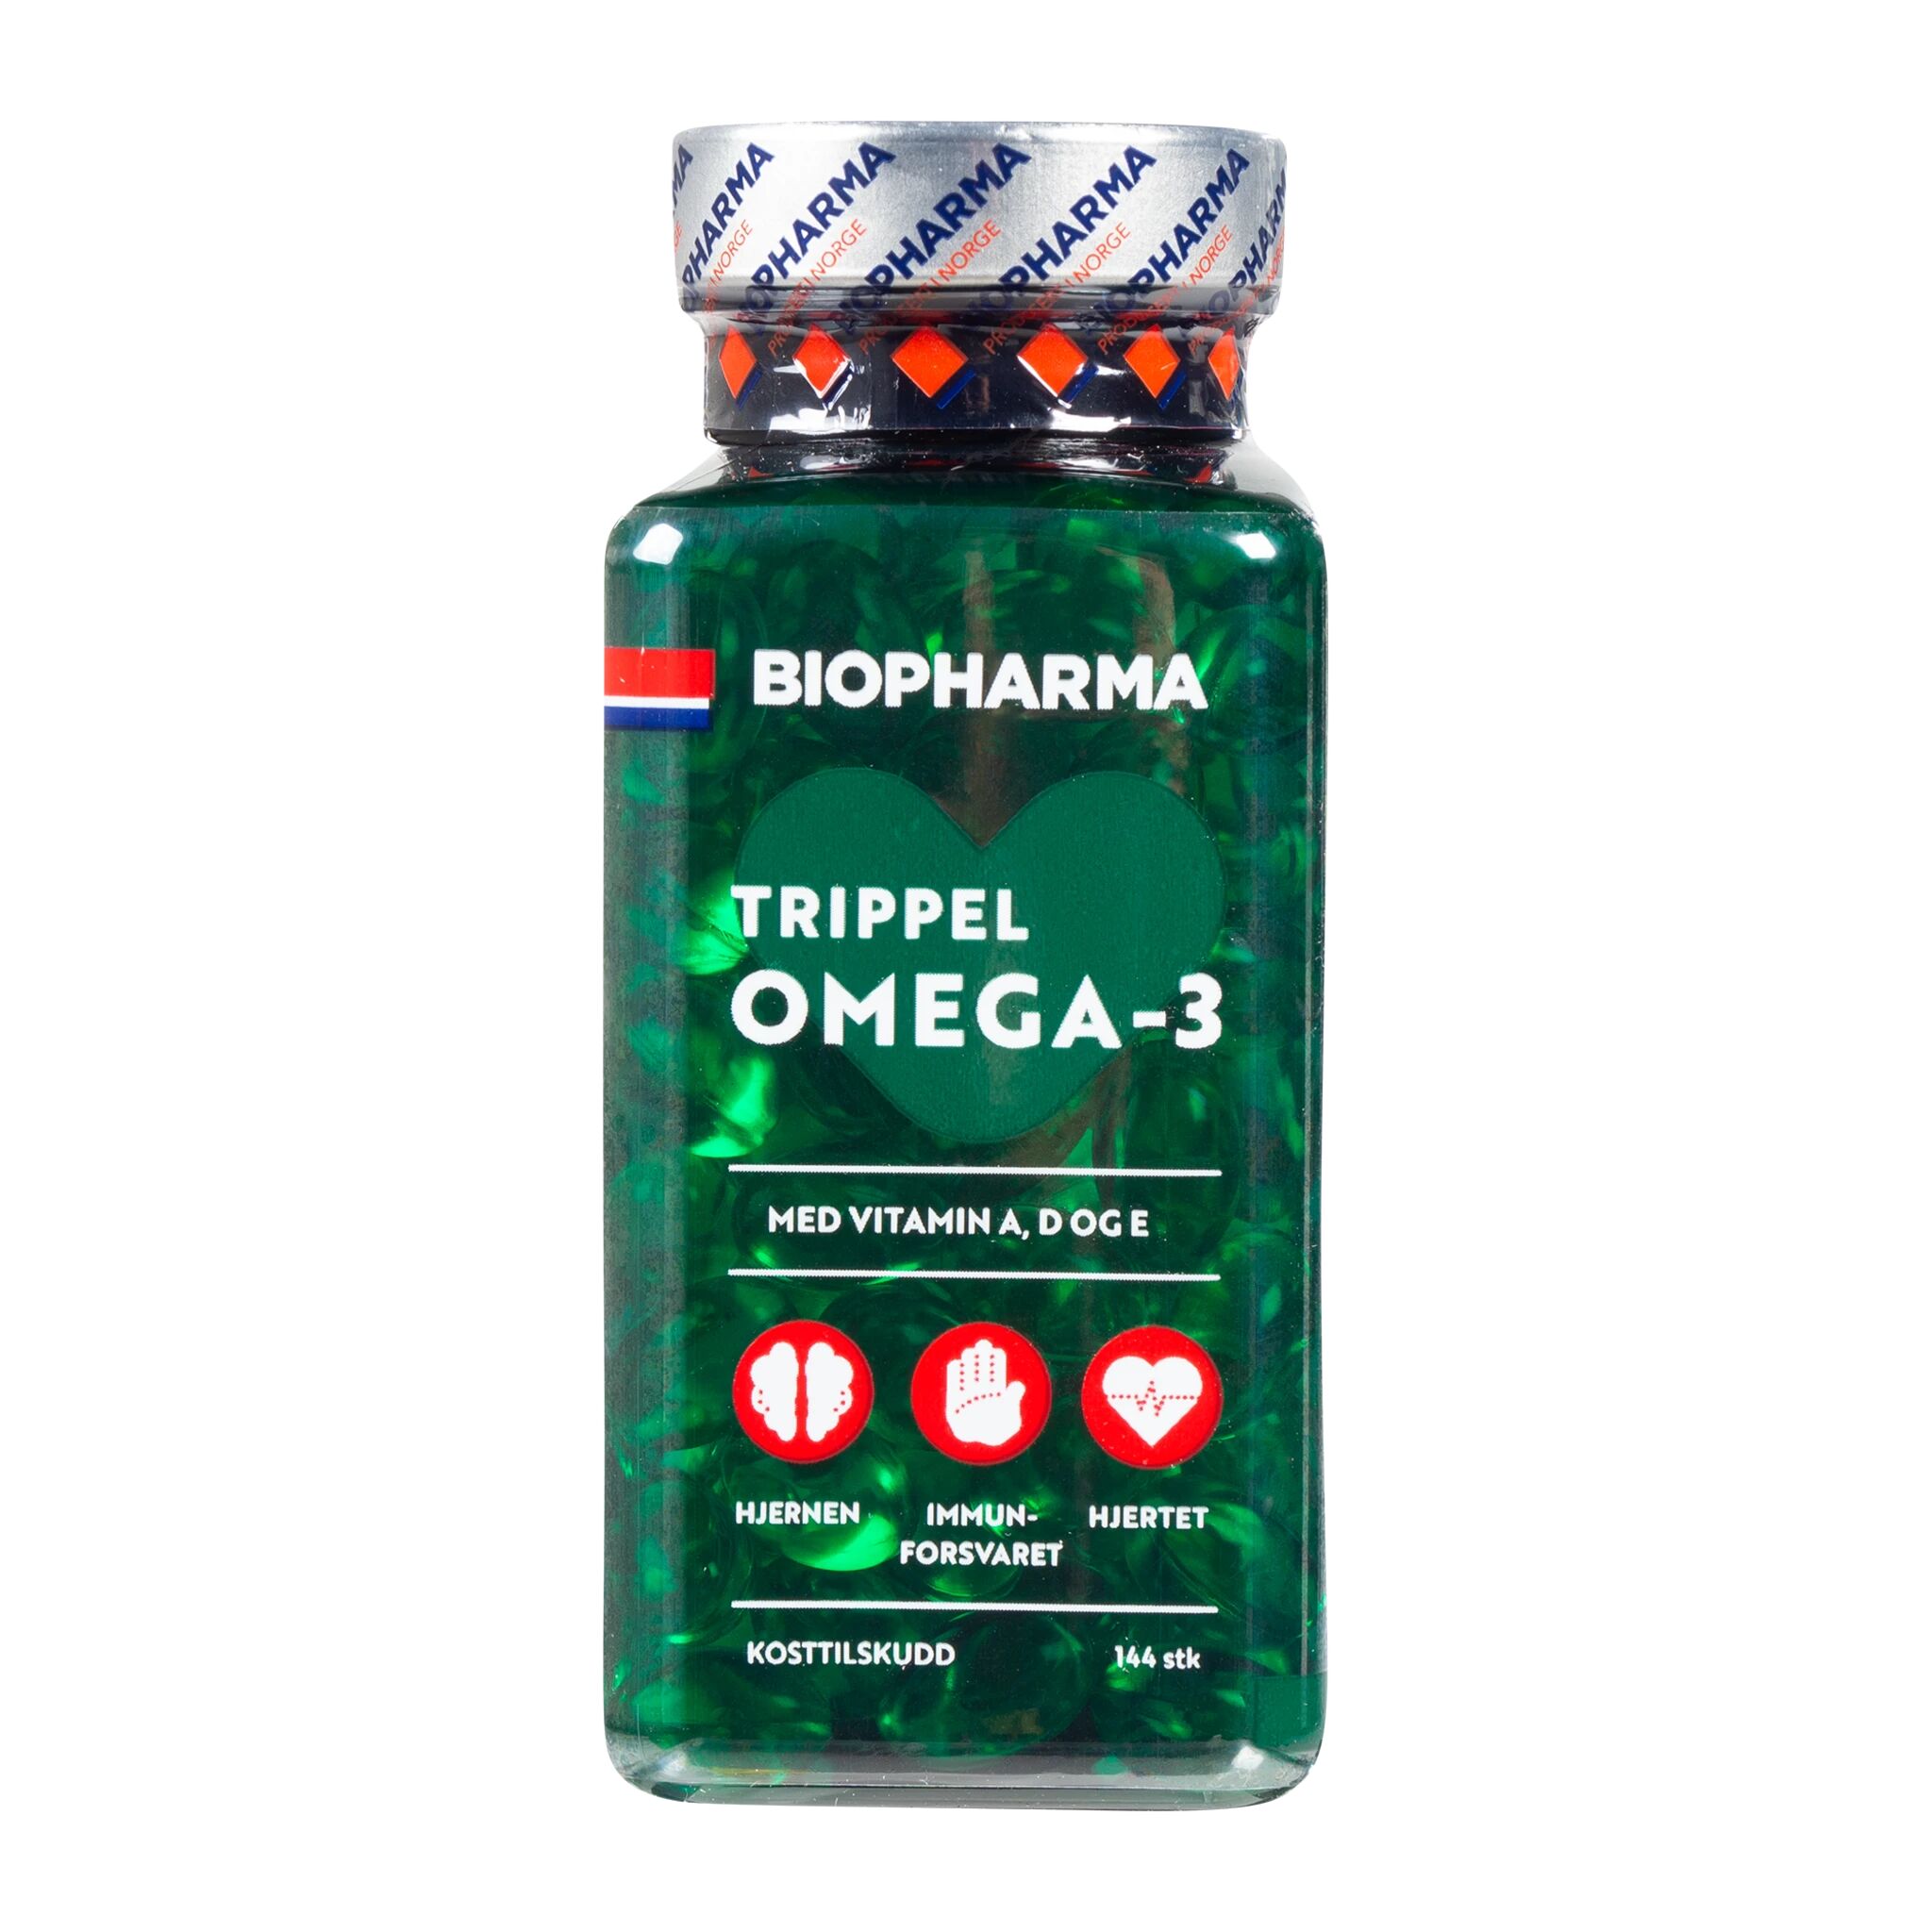 Biopharma Trippel Omega-3, Omega 3 STD STD